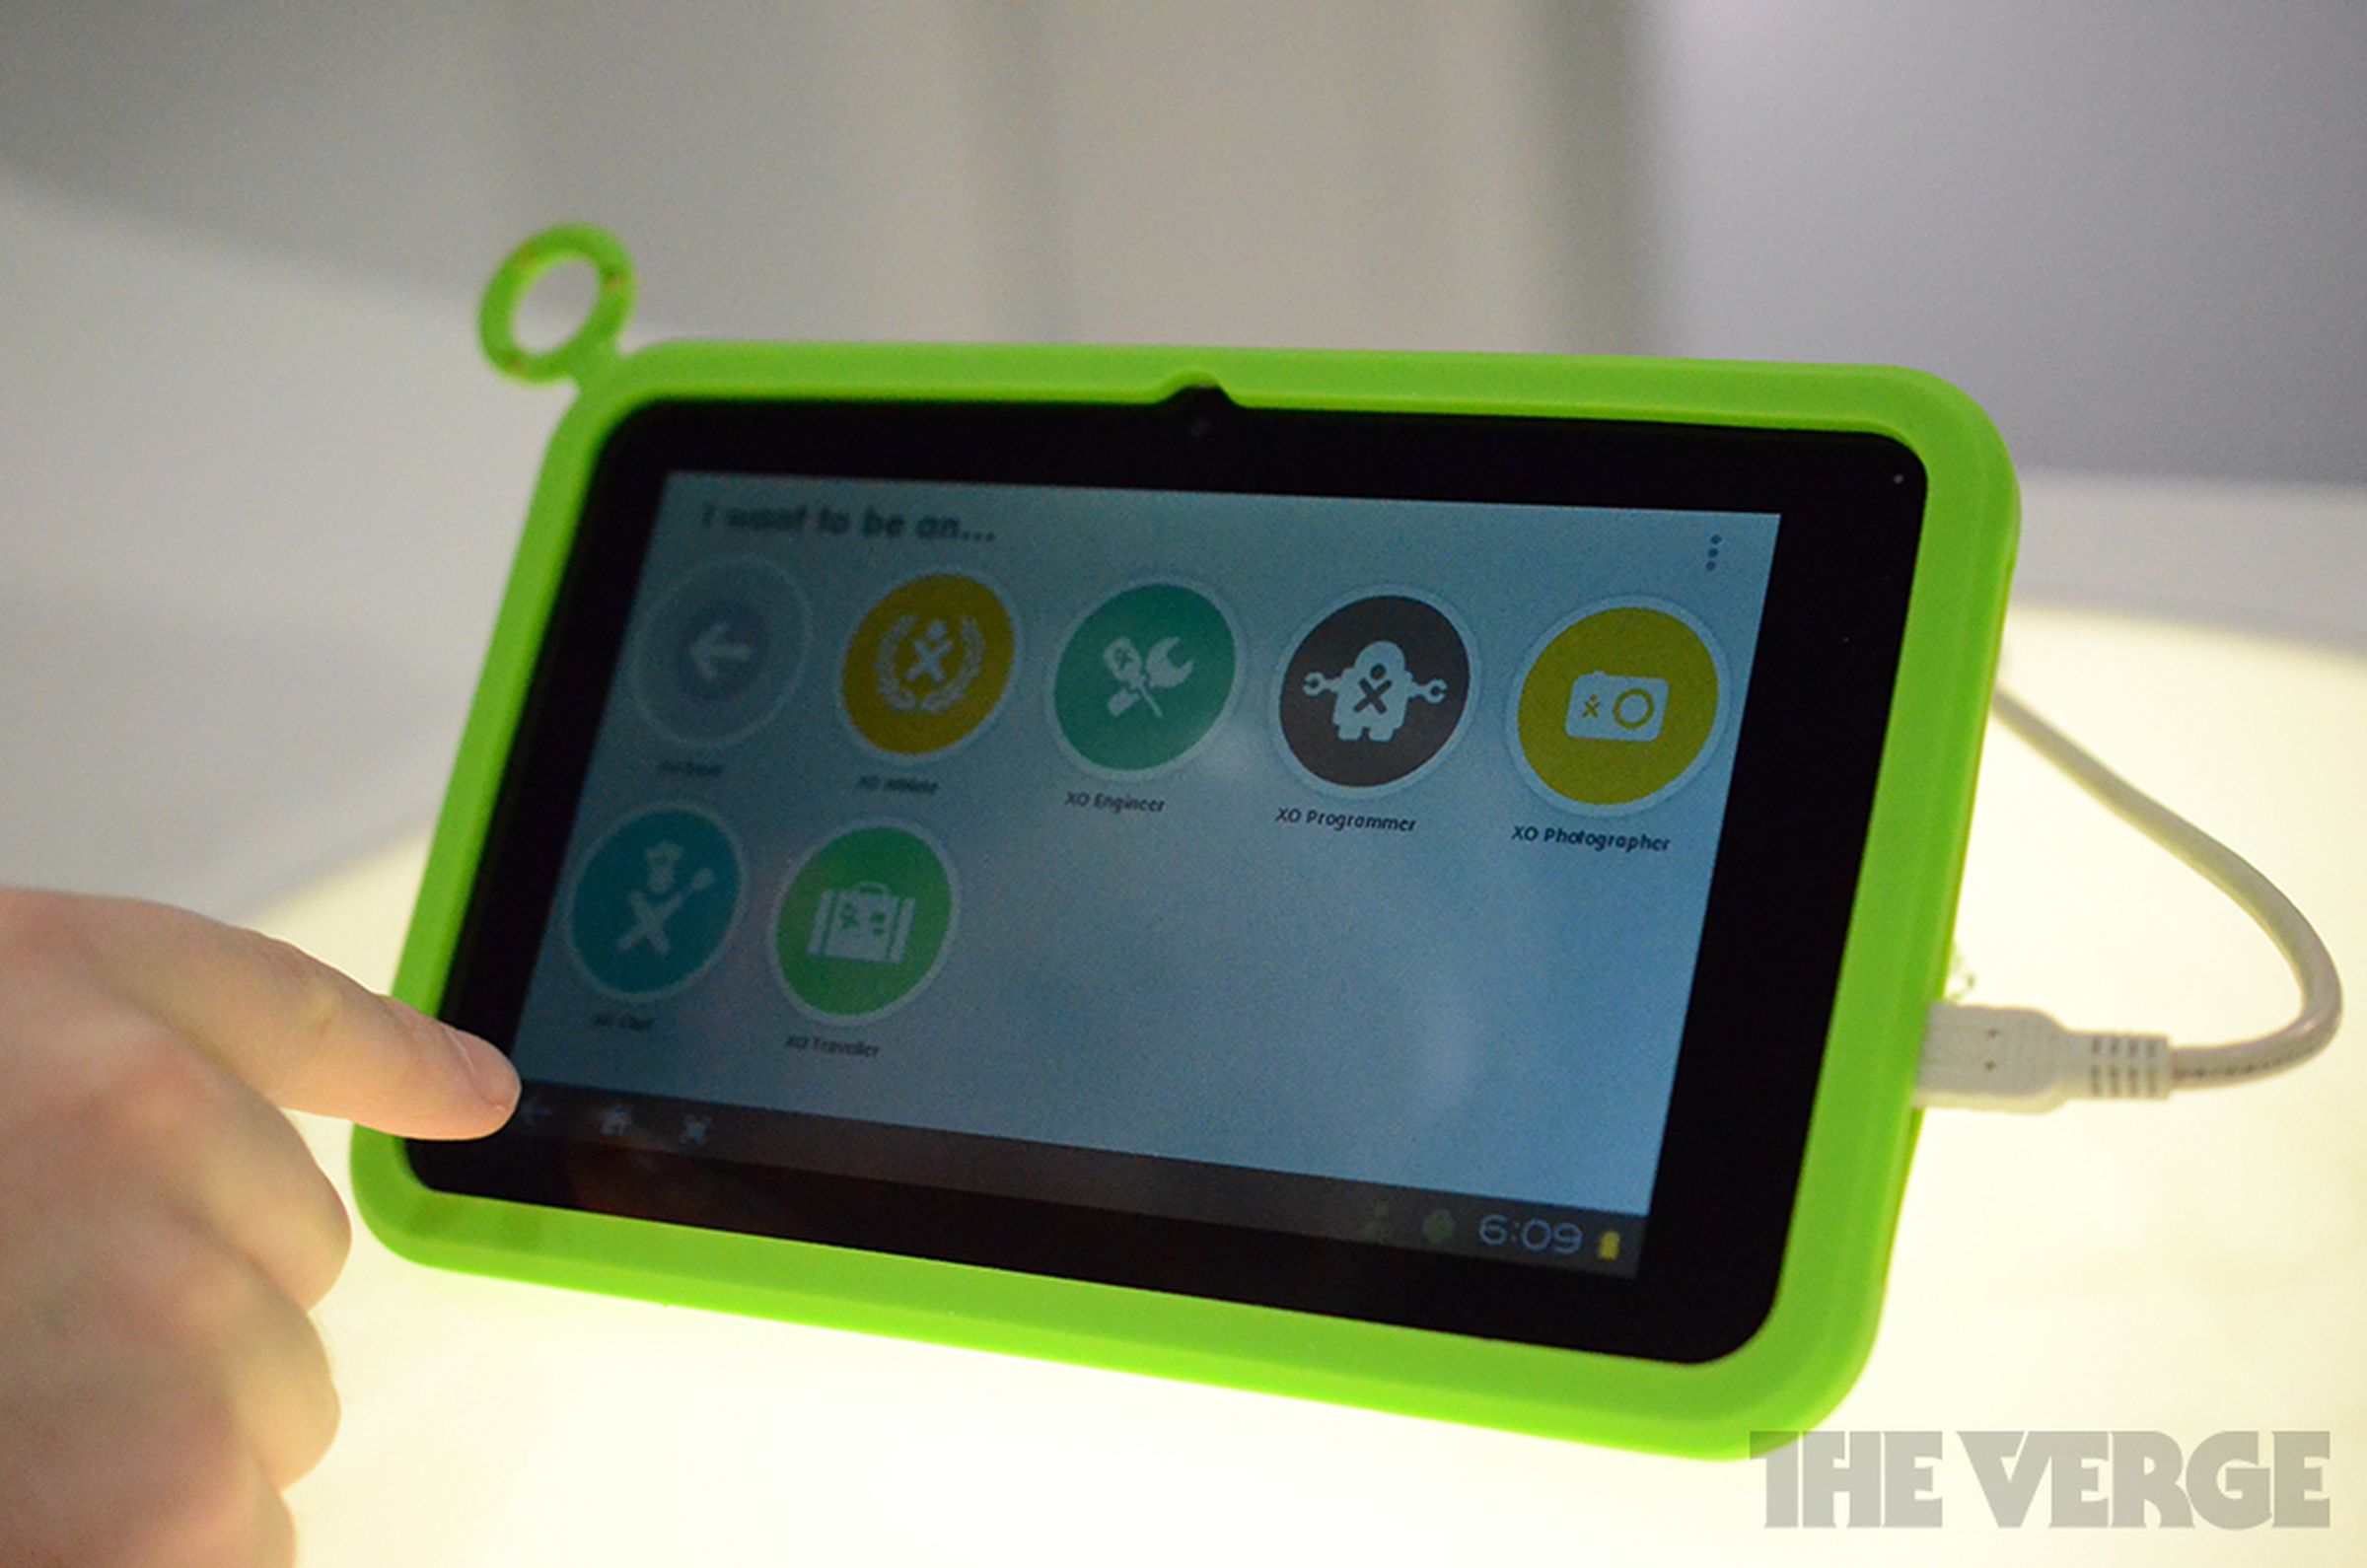 OLPC XO tablet hands-on photos